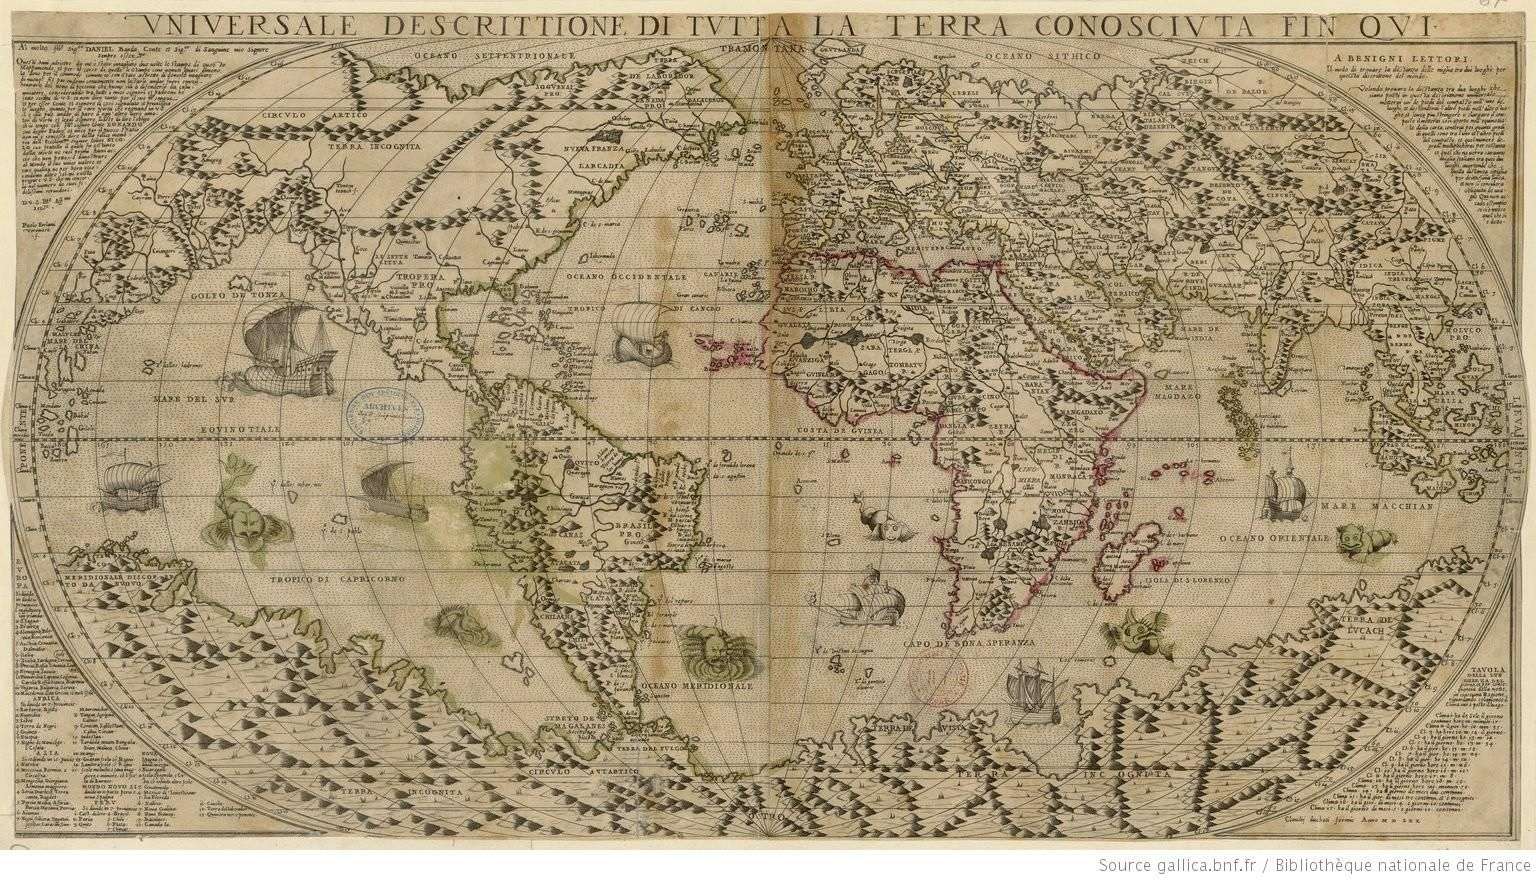 Universale descrittione di tutta la terra conosciuta fin qui par Paolo Forlani Veronese, 1570.